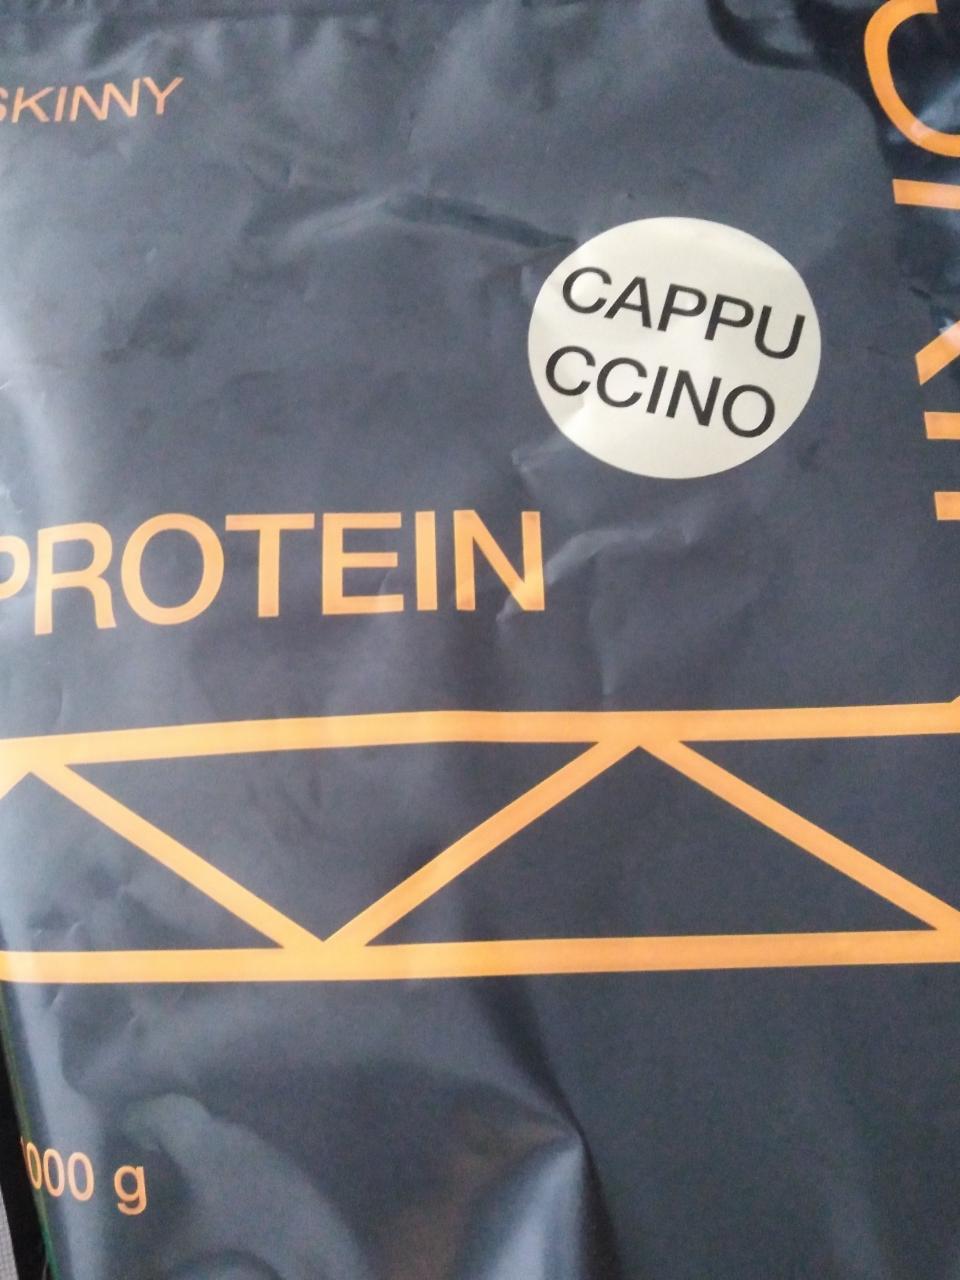 Fotografie - Protein cappuccino Skinny